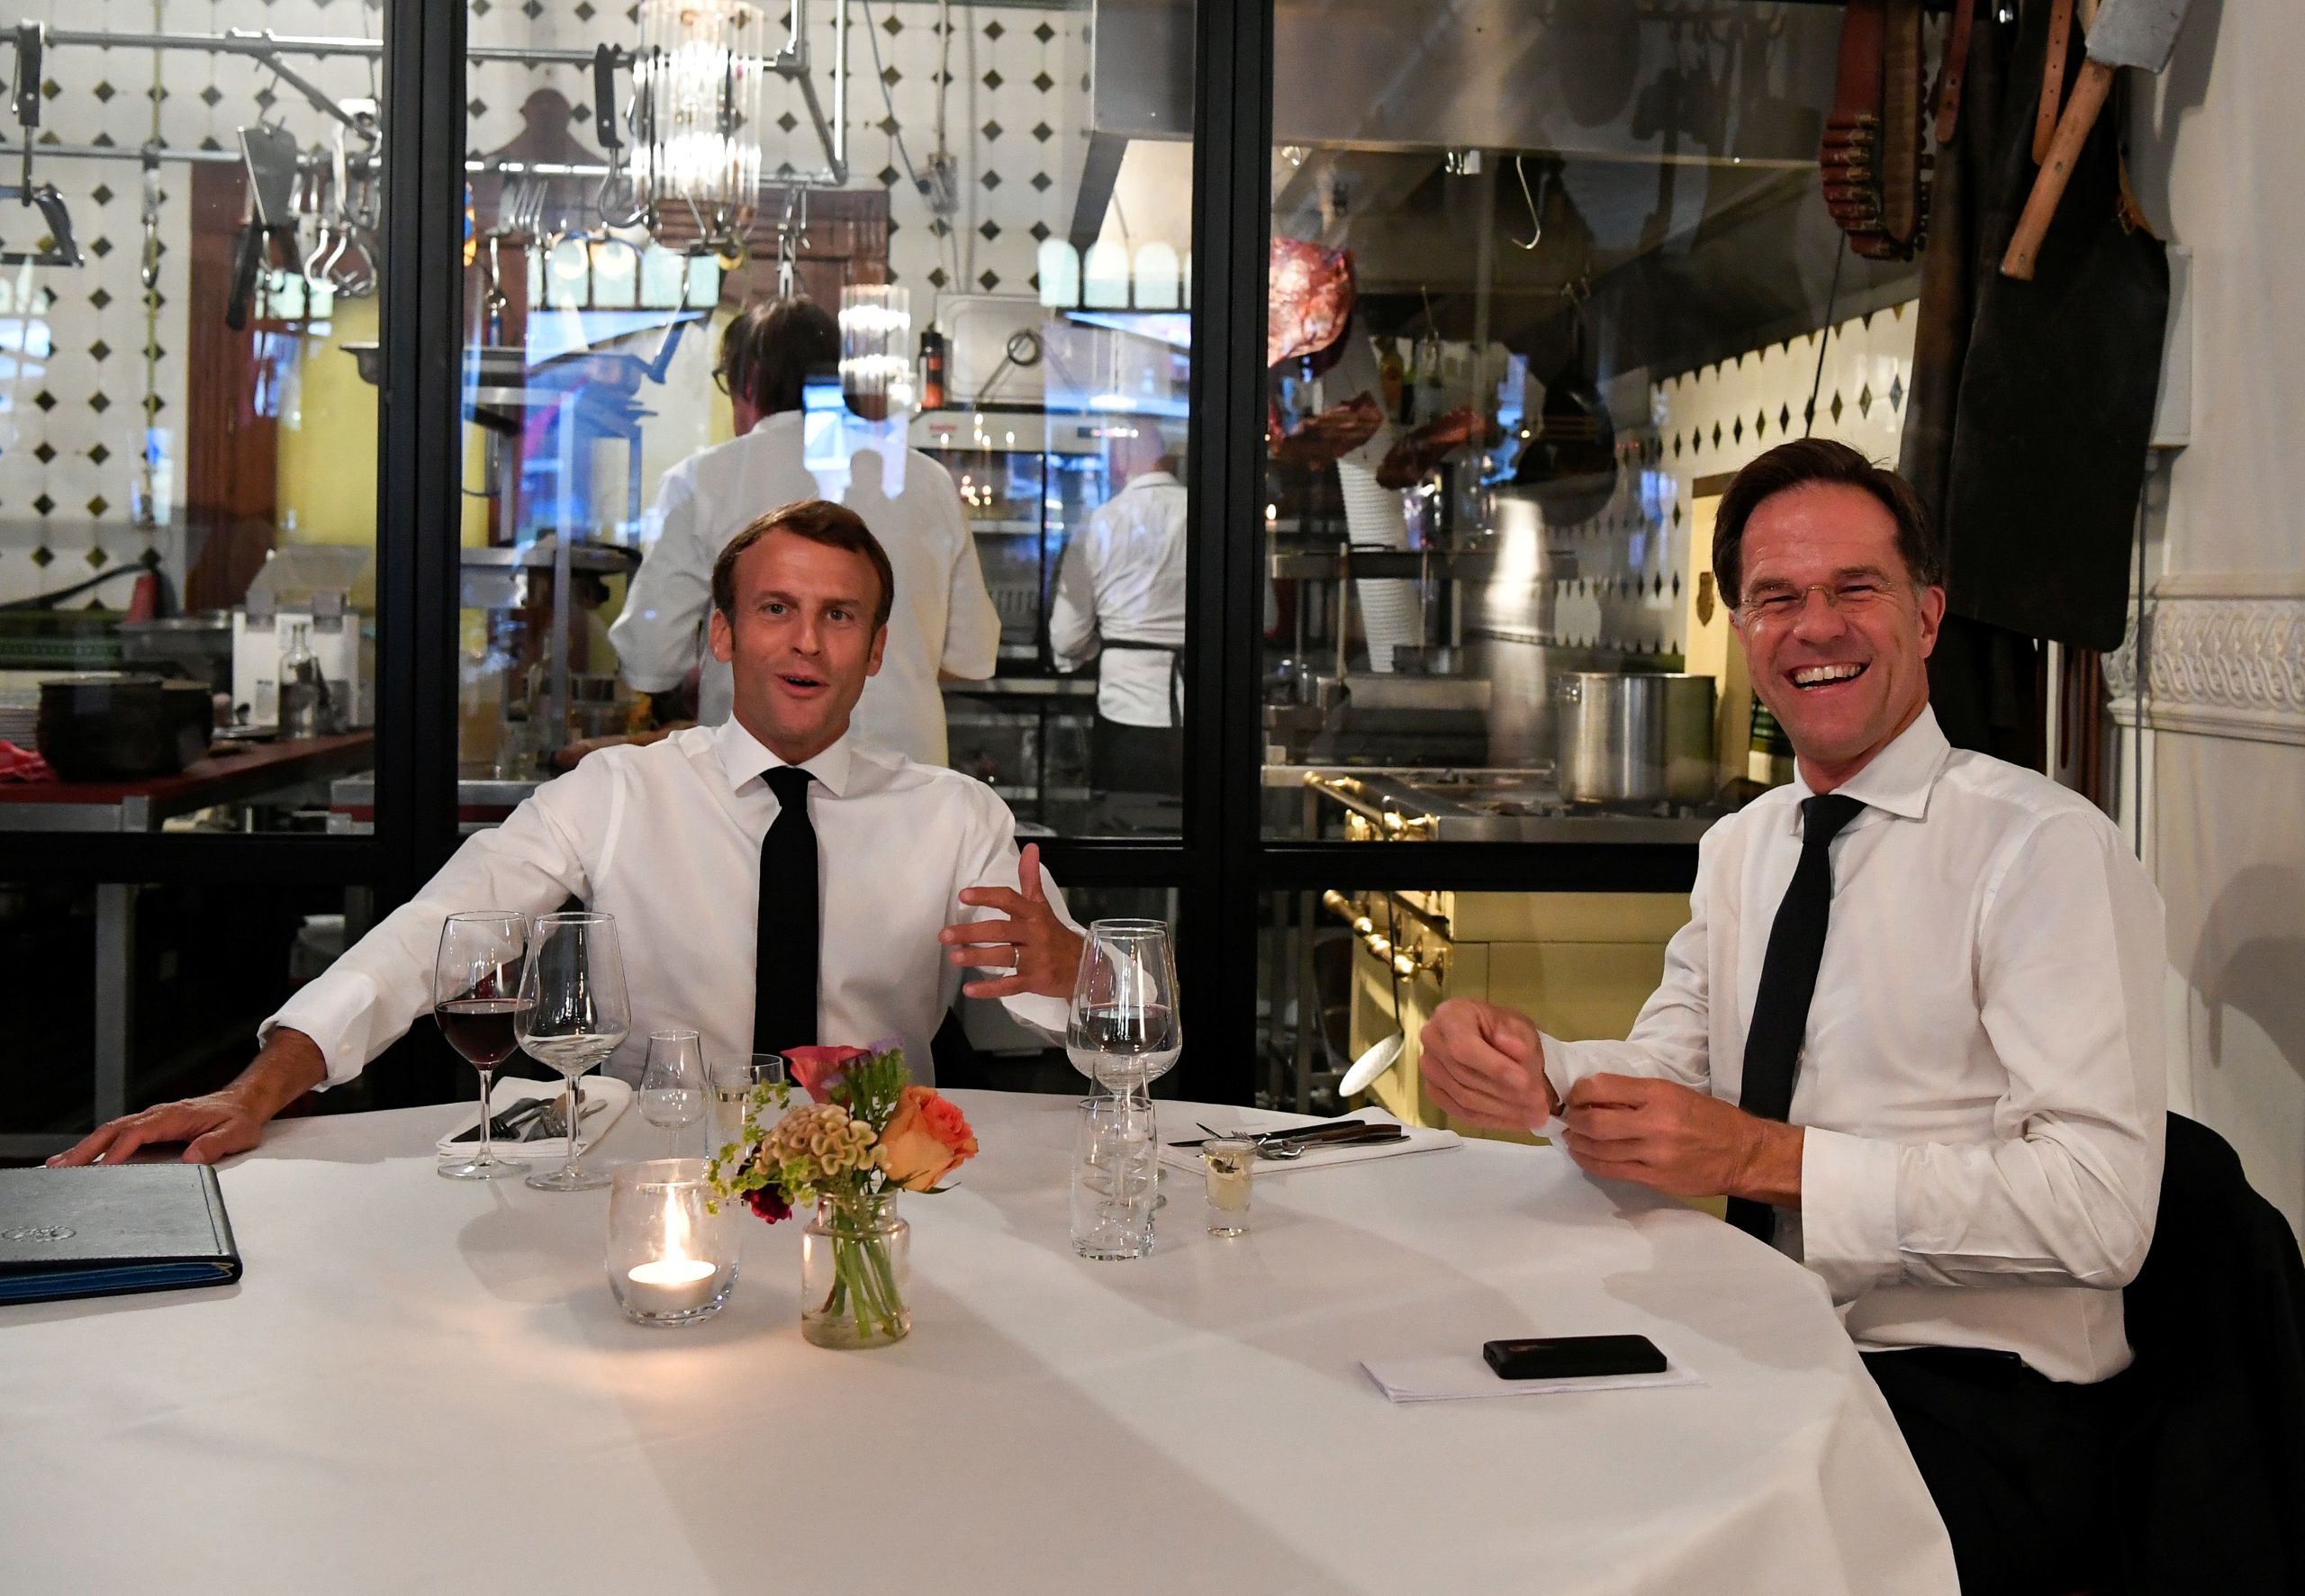 De Franse president Macron en de Nederlandse premier Rutte tijdens hun etentje in het Scheveningse restaurant VleeschHouwerij Cru. 